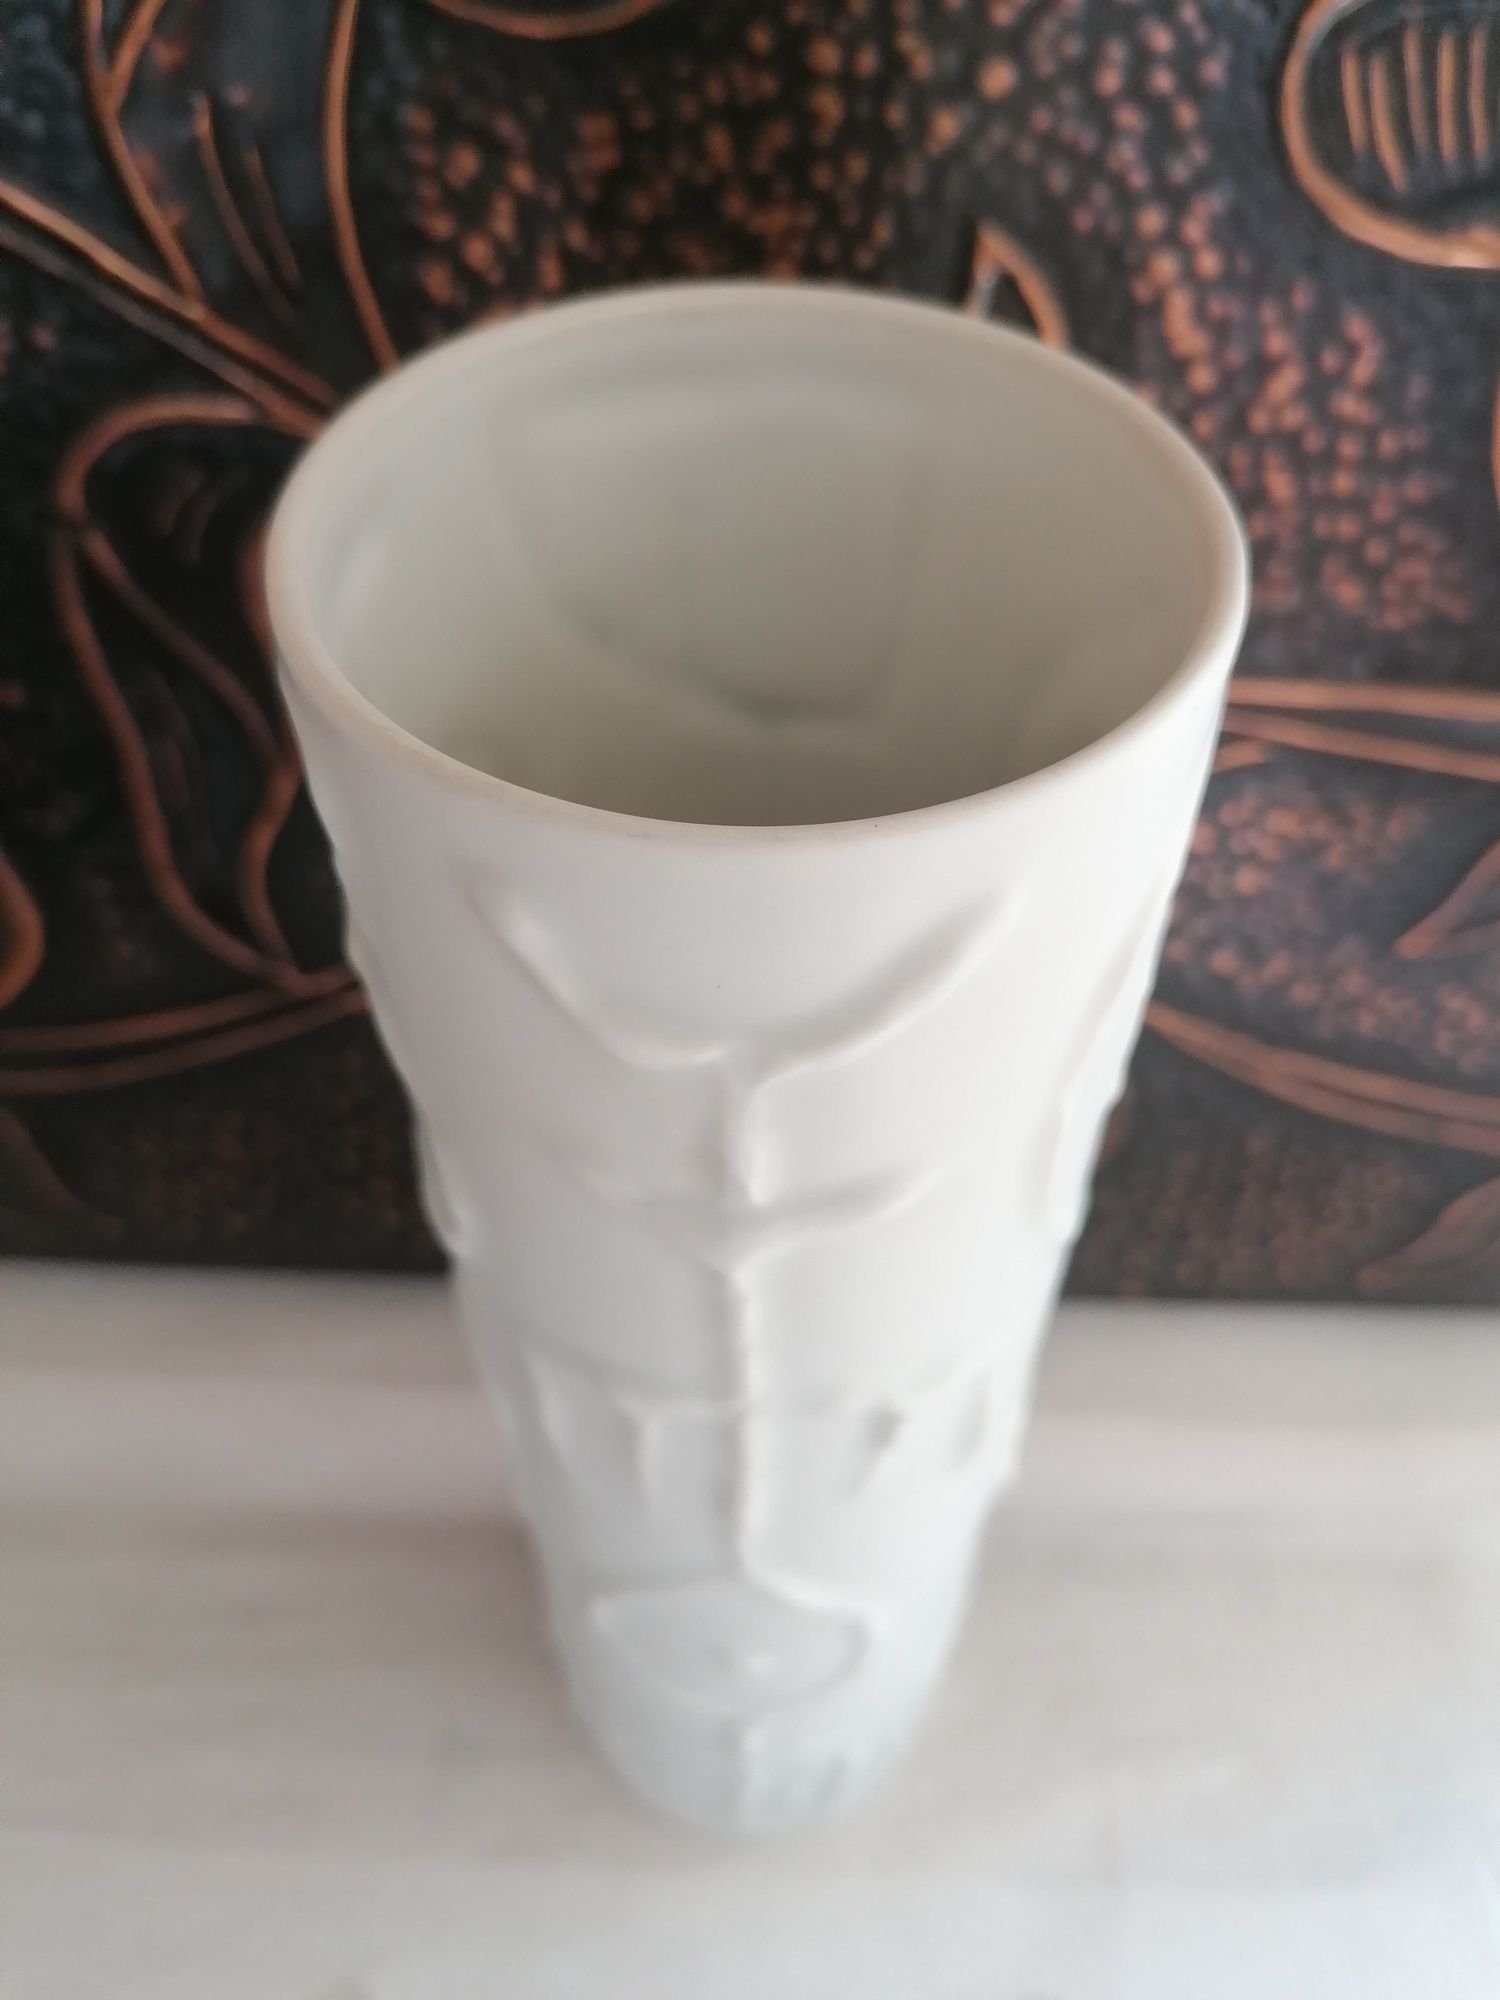 Duży piękny porcelanowy biskwitowy wazon Rosenthal